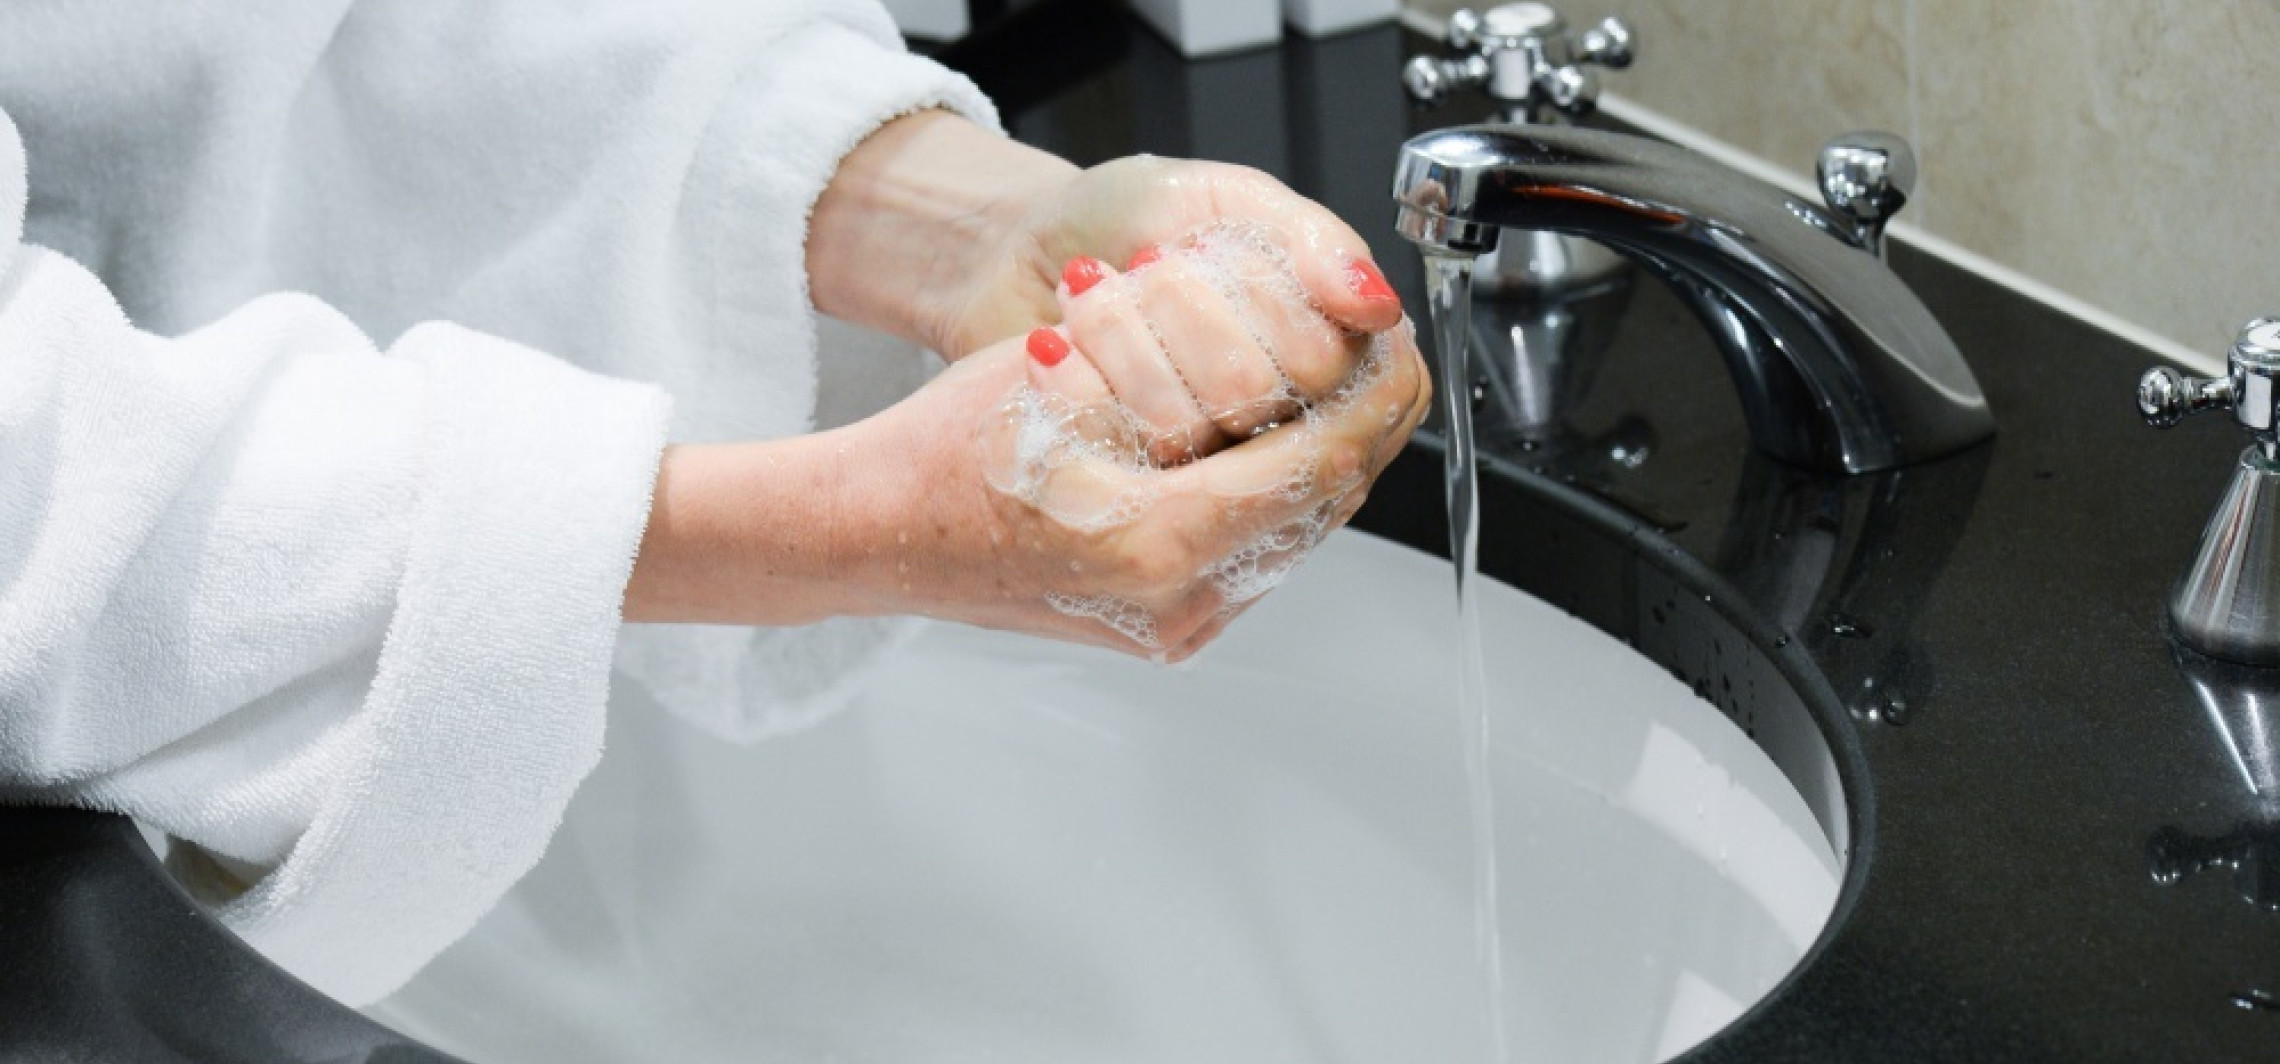 Fizycy sprawdzili, jak długo trzeba myć ręce, by zrobić to skutecznie